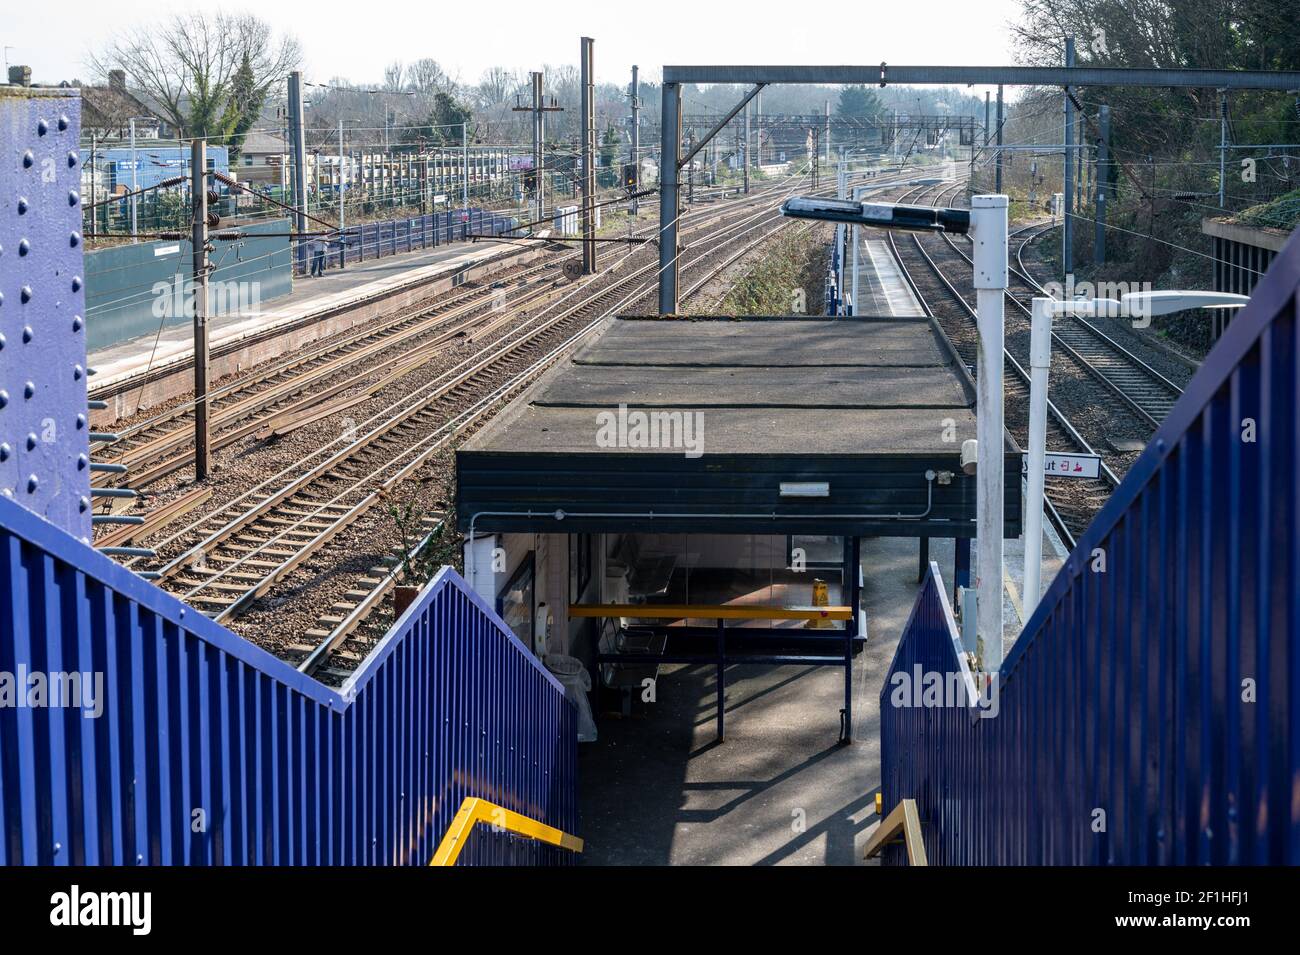 Während der dritten Covid-Pandemie sperrte tagsüber ein verlassener oberirdisch gelegener Bahnhof. Harringay Station, London. Stockfoto